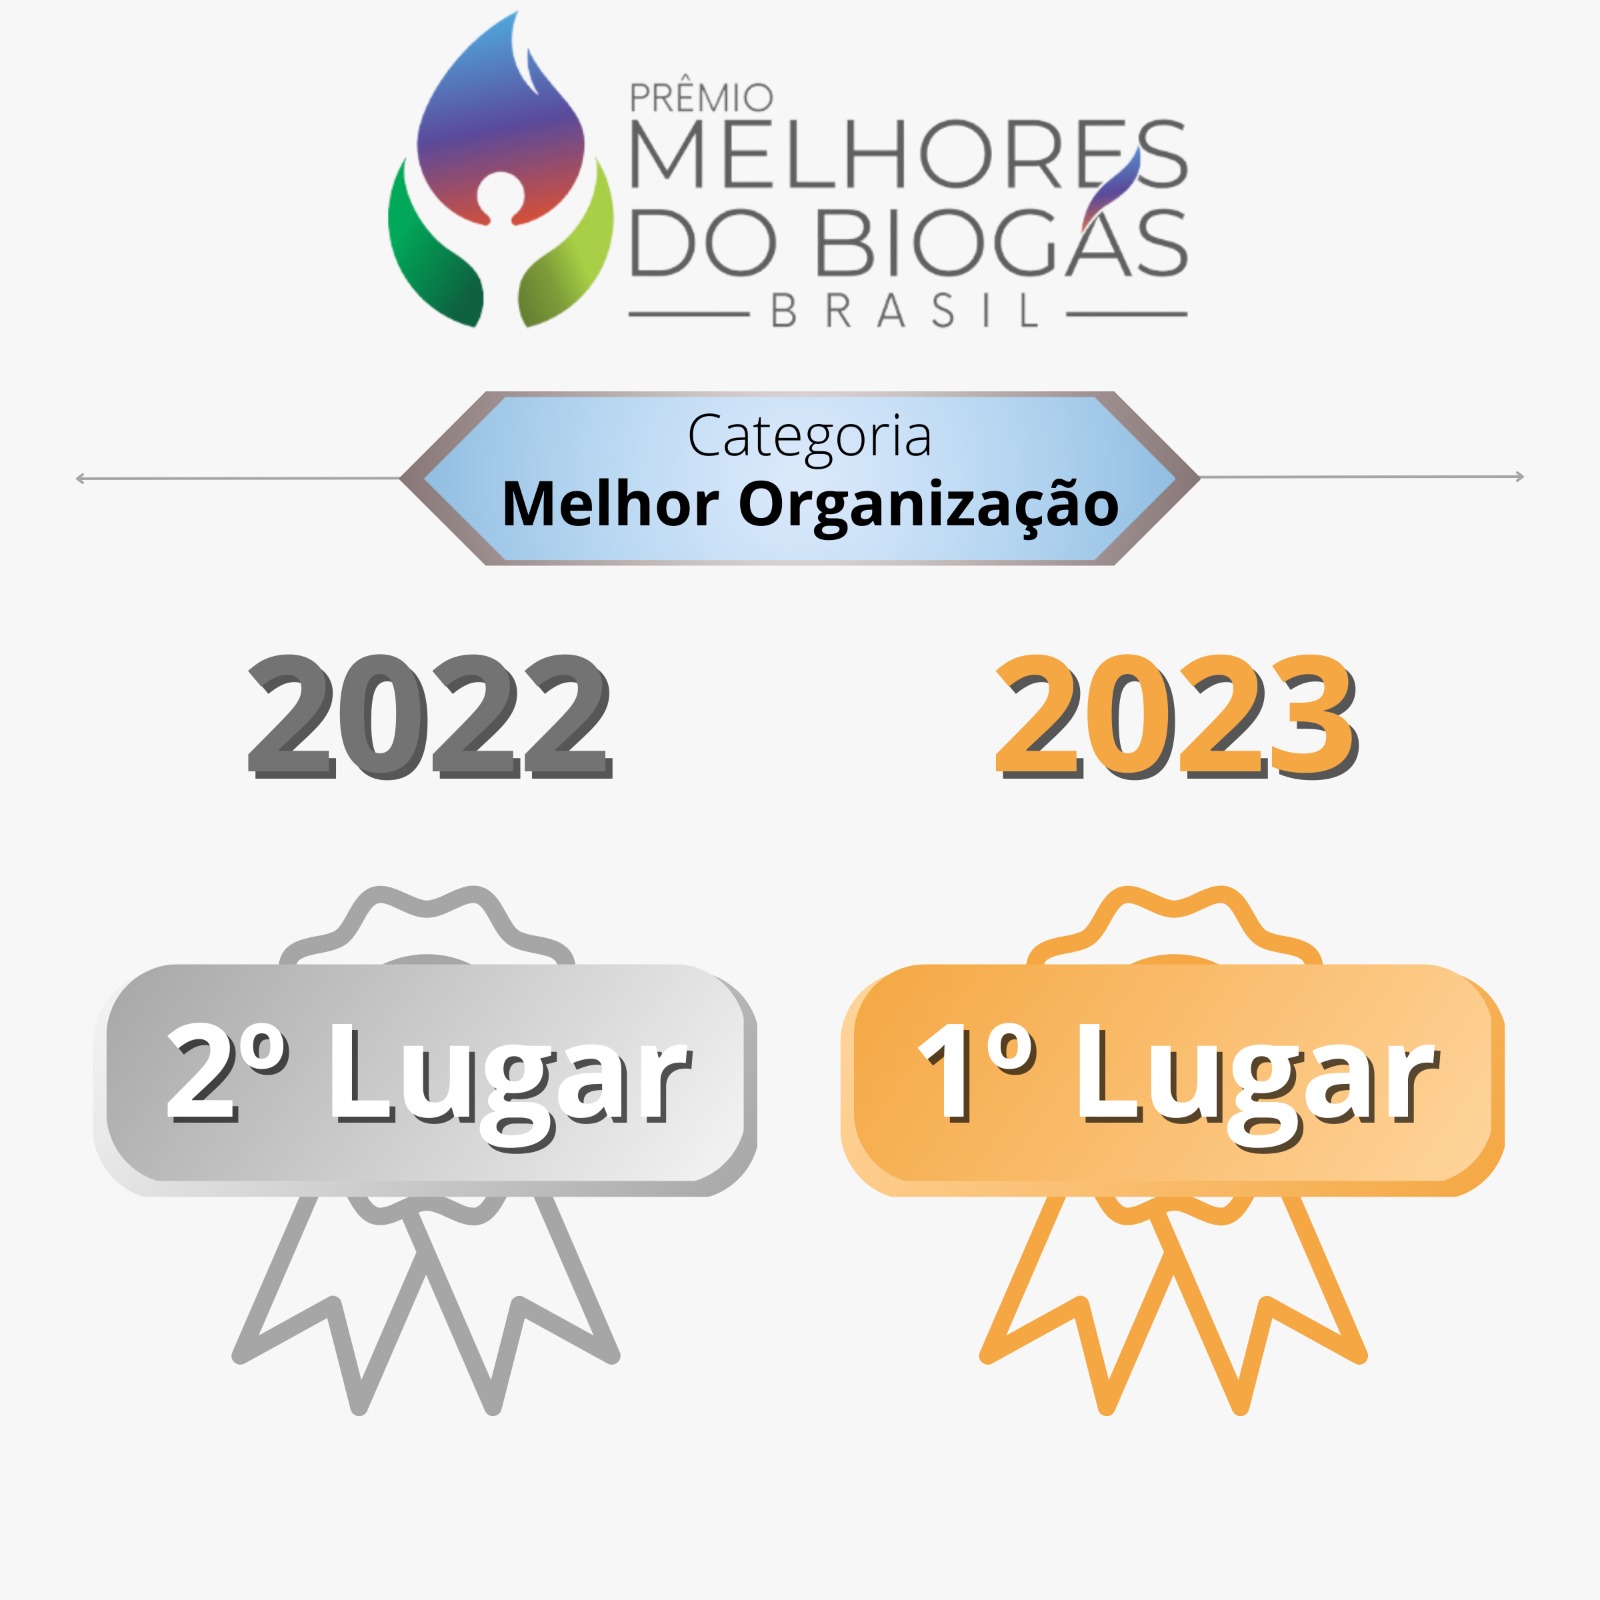 Prêmio Melhores do Biogás Brasil